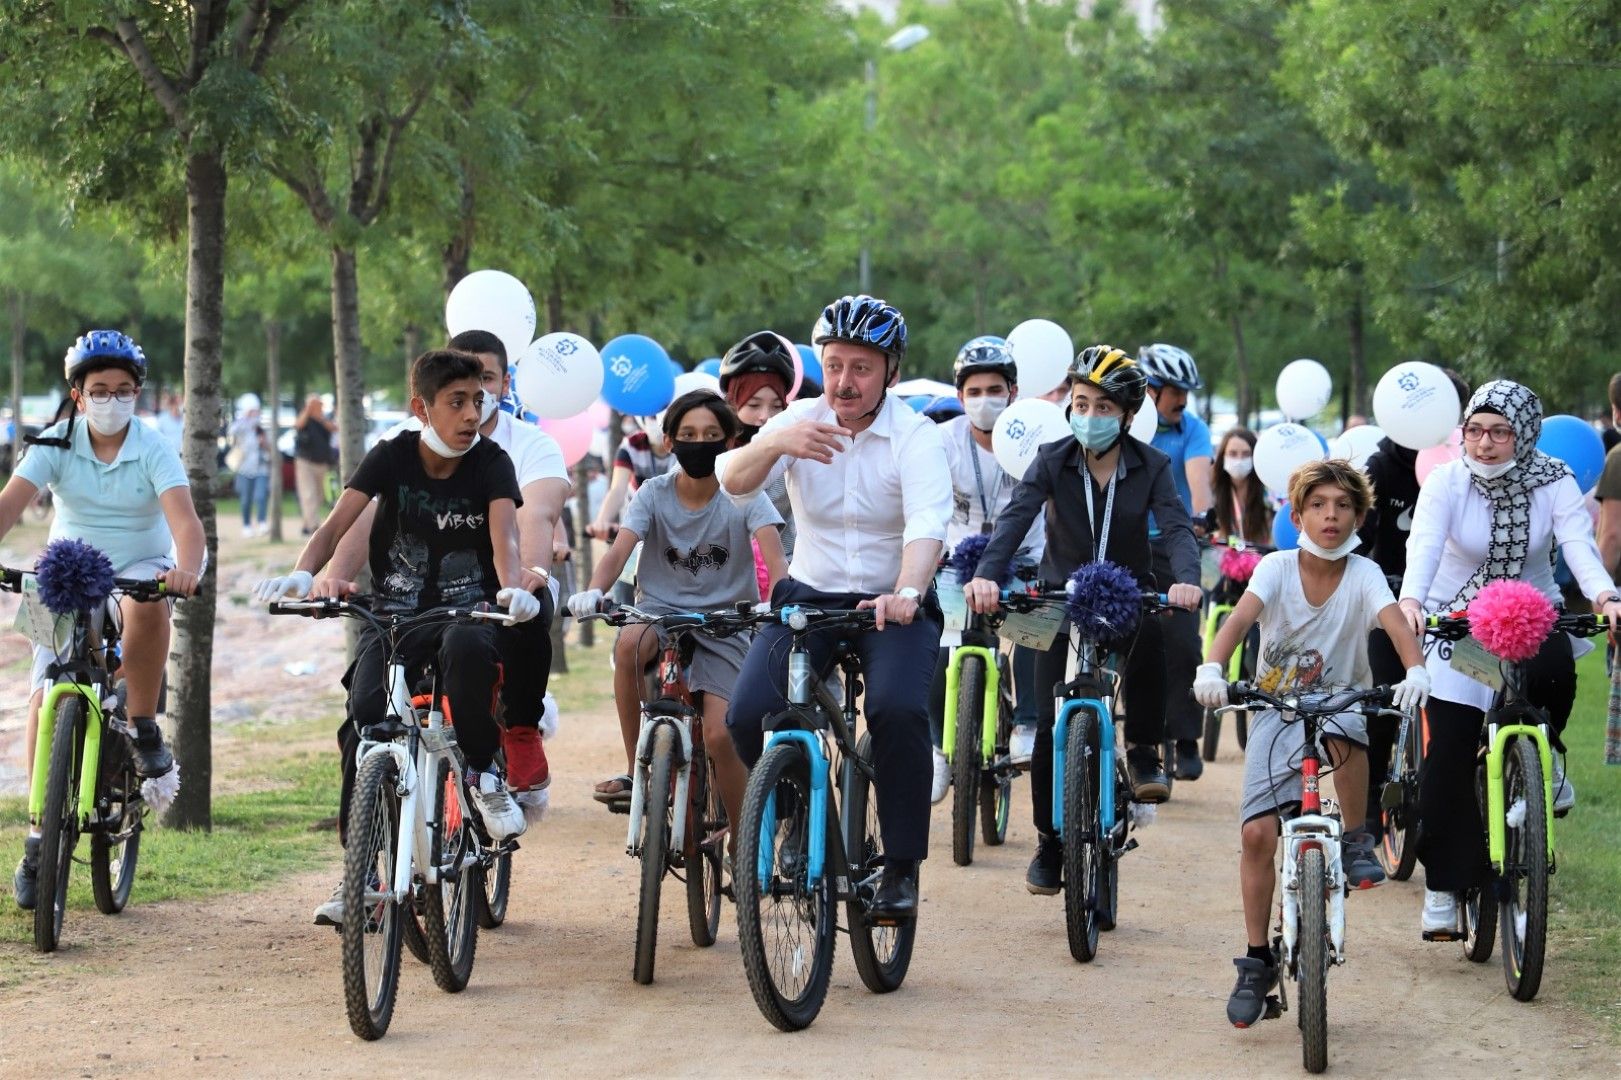 Kocaeli Büyükşehir Belediyesi Gençlik ve Spor Hizmetleri Dairesi Başkanlığı 19 Mayıs Atatürk’ü Anma Gençlik ve Spor Bayramı sebebiyle 41 gence bisiklet hediye edecek.